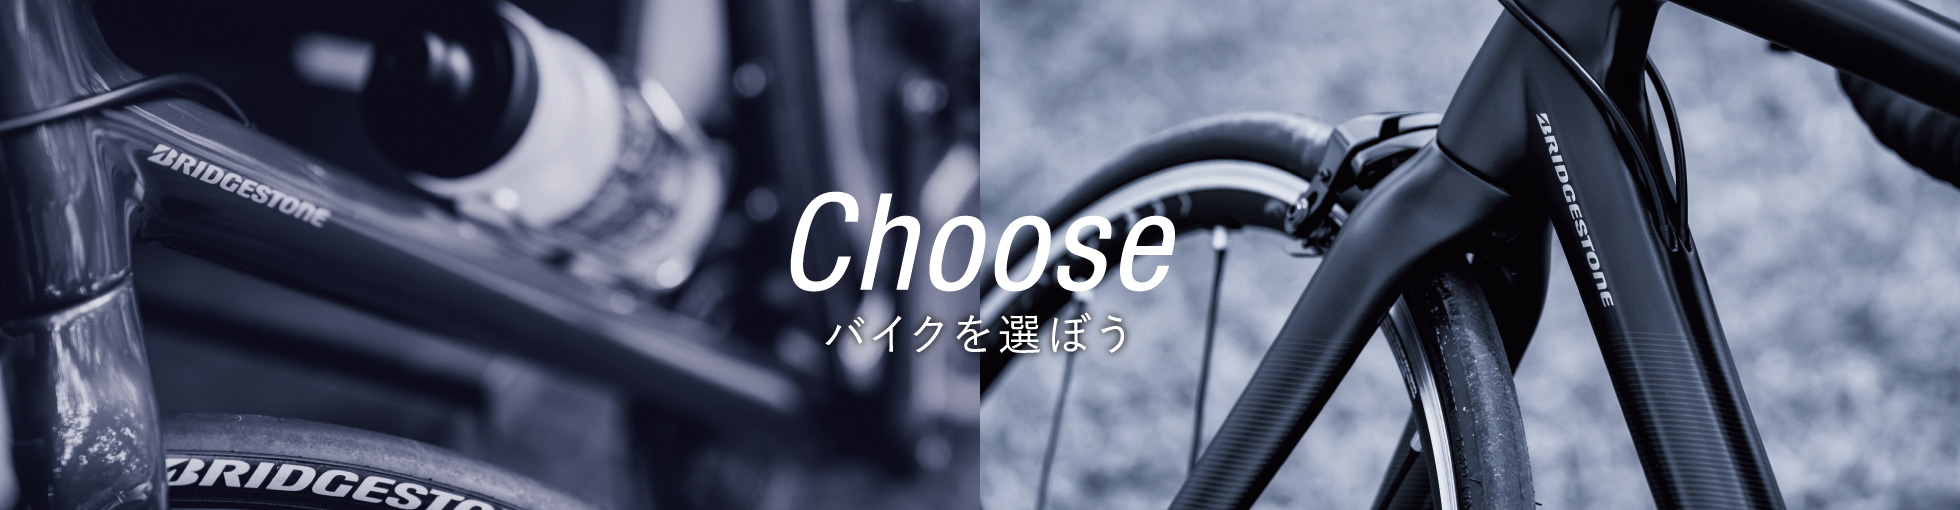 Choose バイクを選ぼう